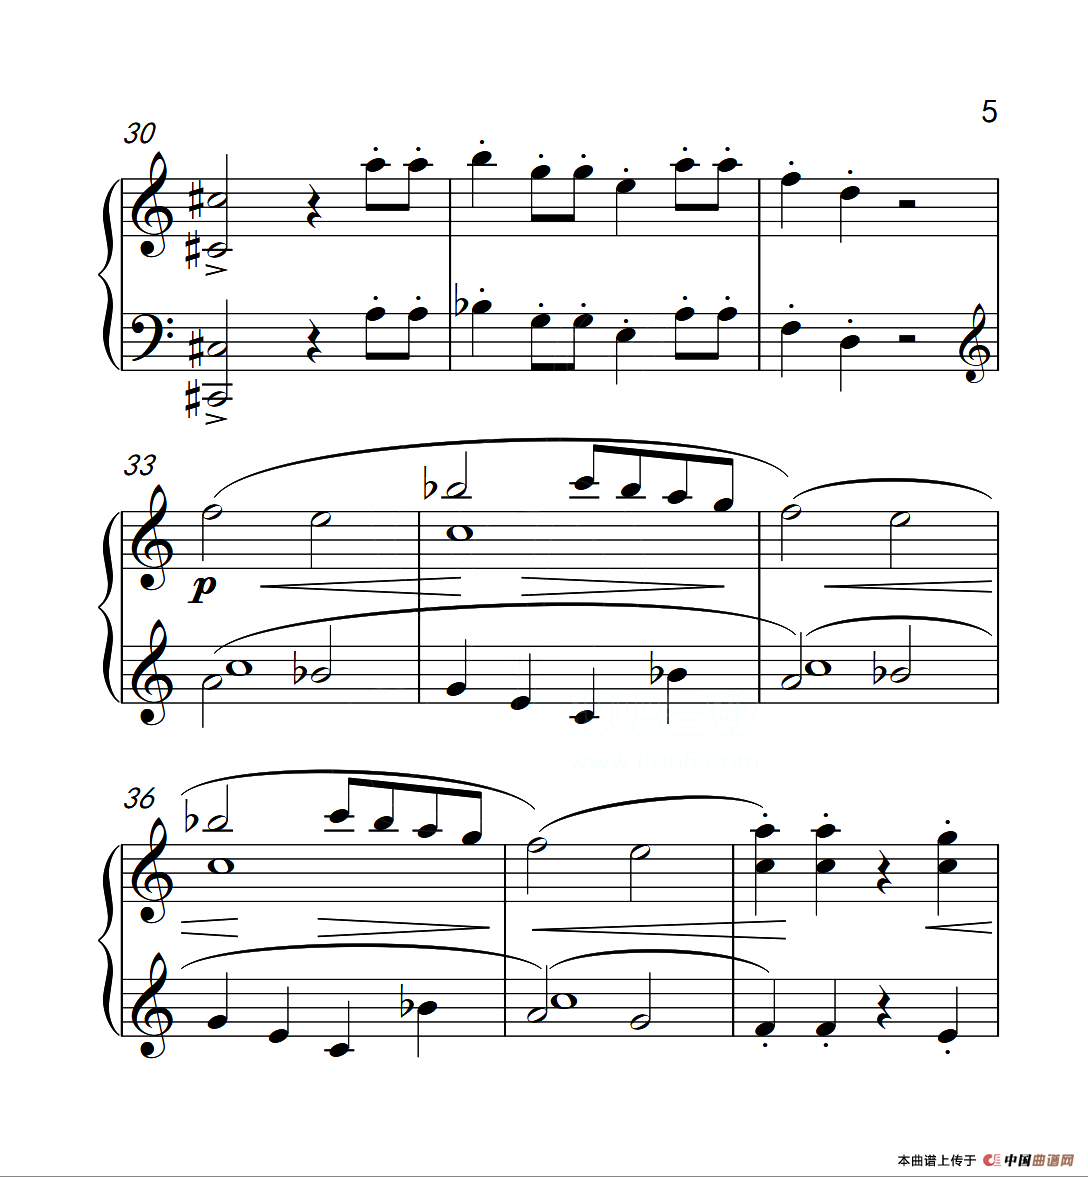 中国音乐学院钢琴考级曲目要求(中国音乐学院钢琴考级曲目要求2022年)